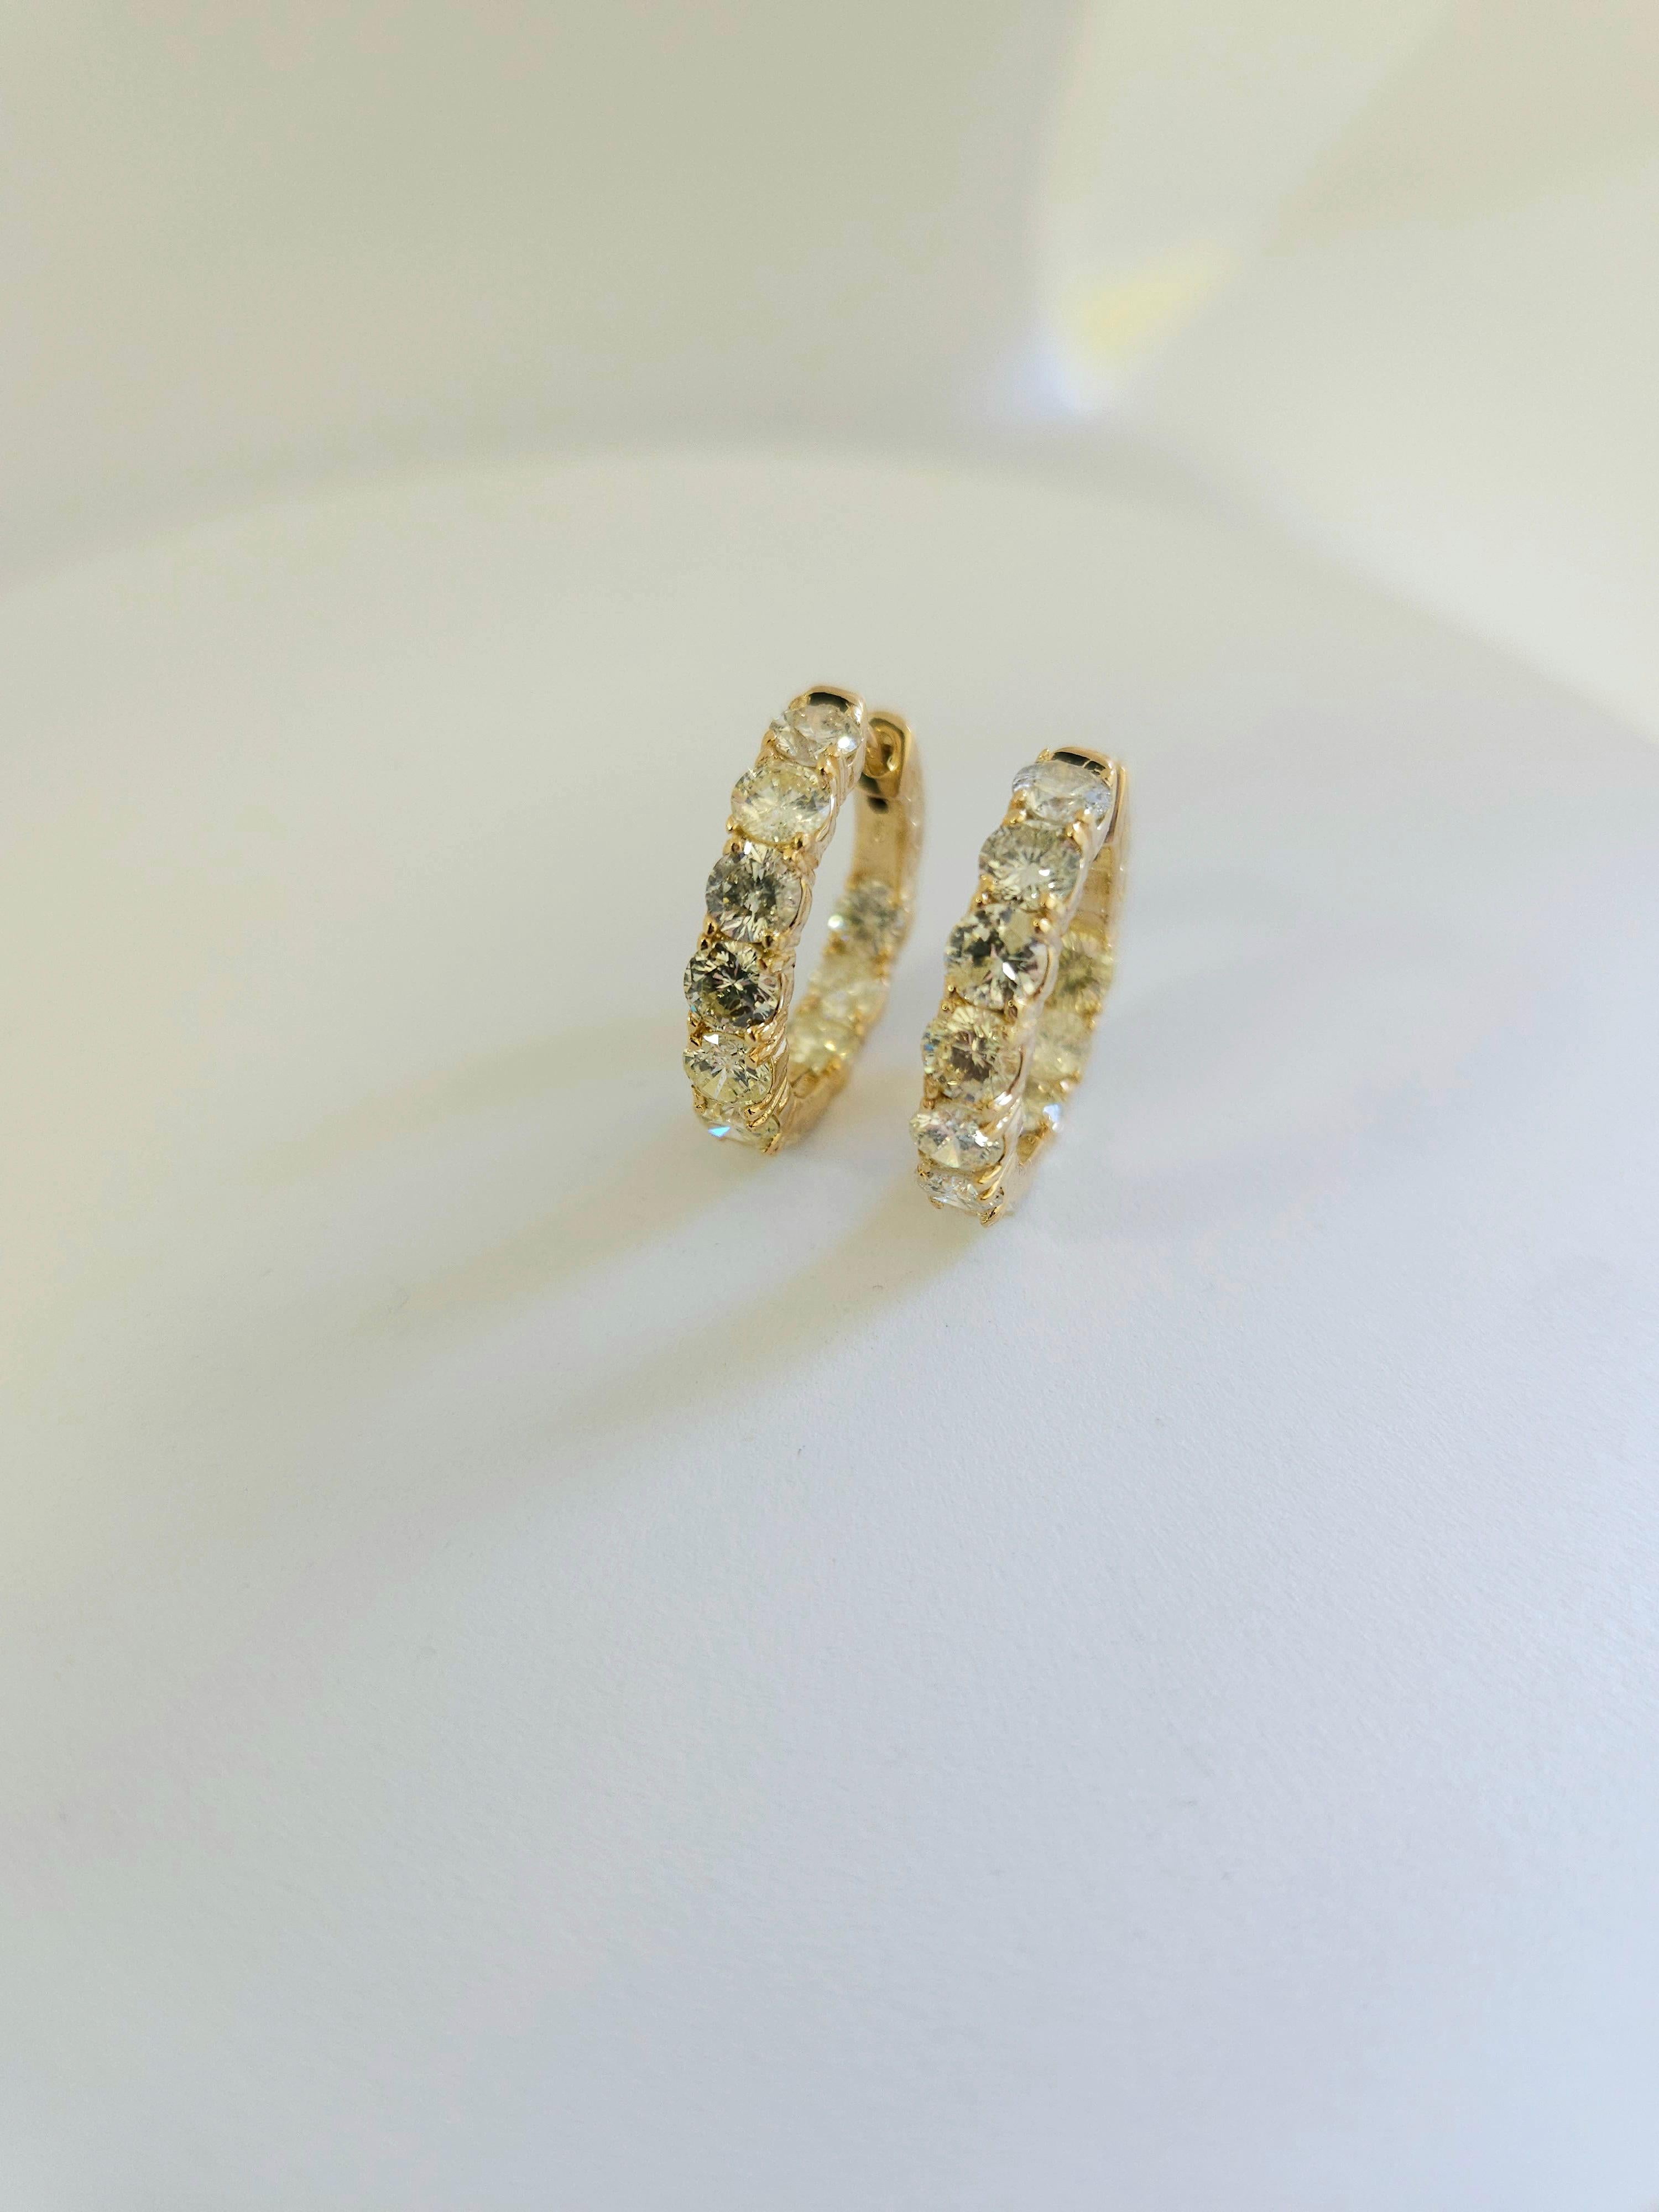 Wunderschönes Paar diamantener Huggie-Reifen-Ohrringe aus 14k Gelbgold. 
Wird mit einem Druckknopfverschluss gesichert und getragen. Eleganz für jeden Augenblick. Stil von innen nach außen
Durchschnittliche Farbe I, Reinheit SI,I 
Misst 0,75 Zoll